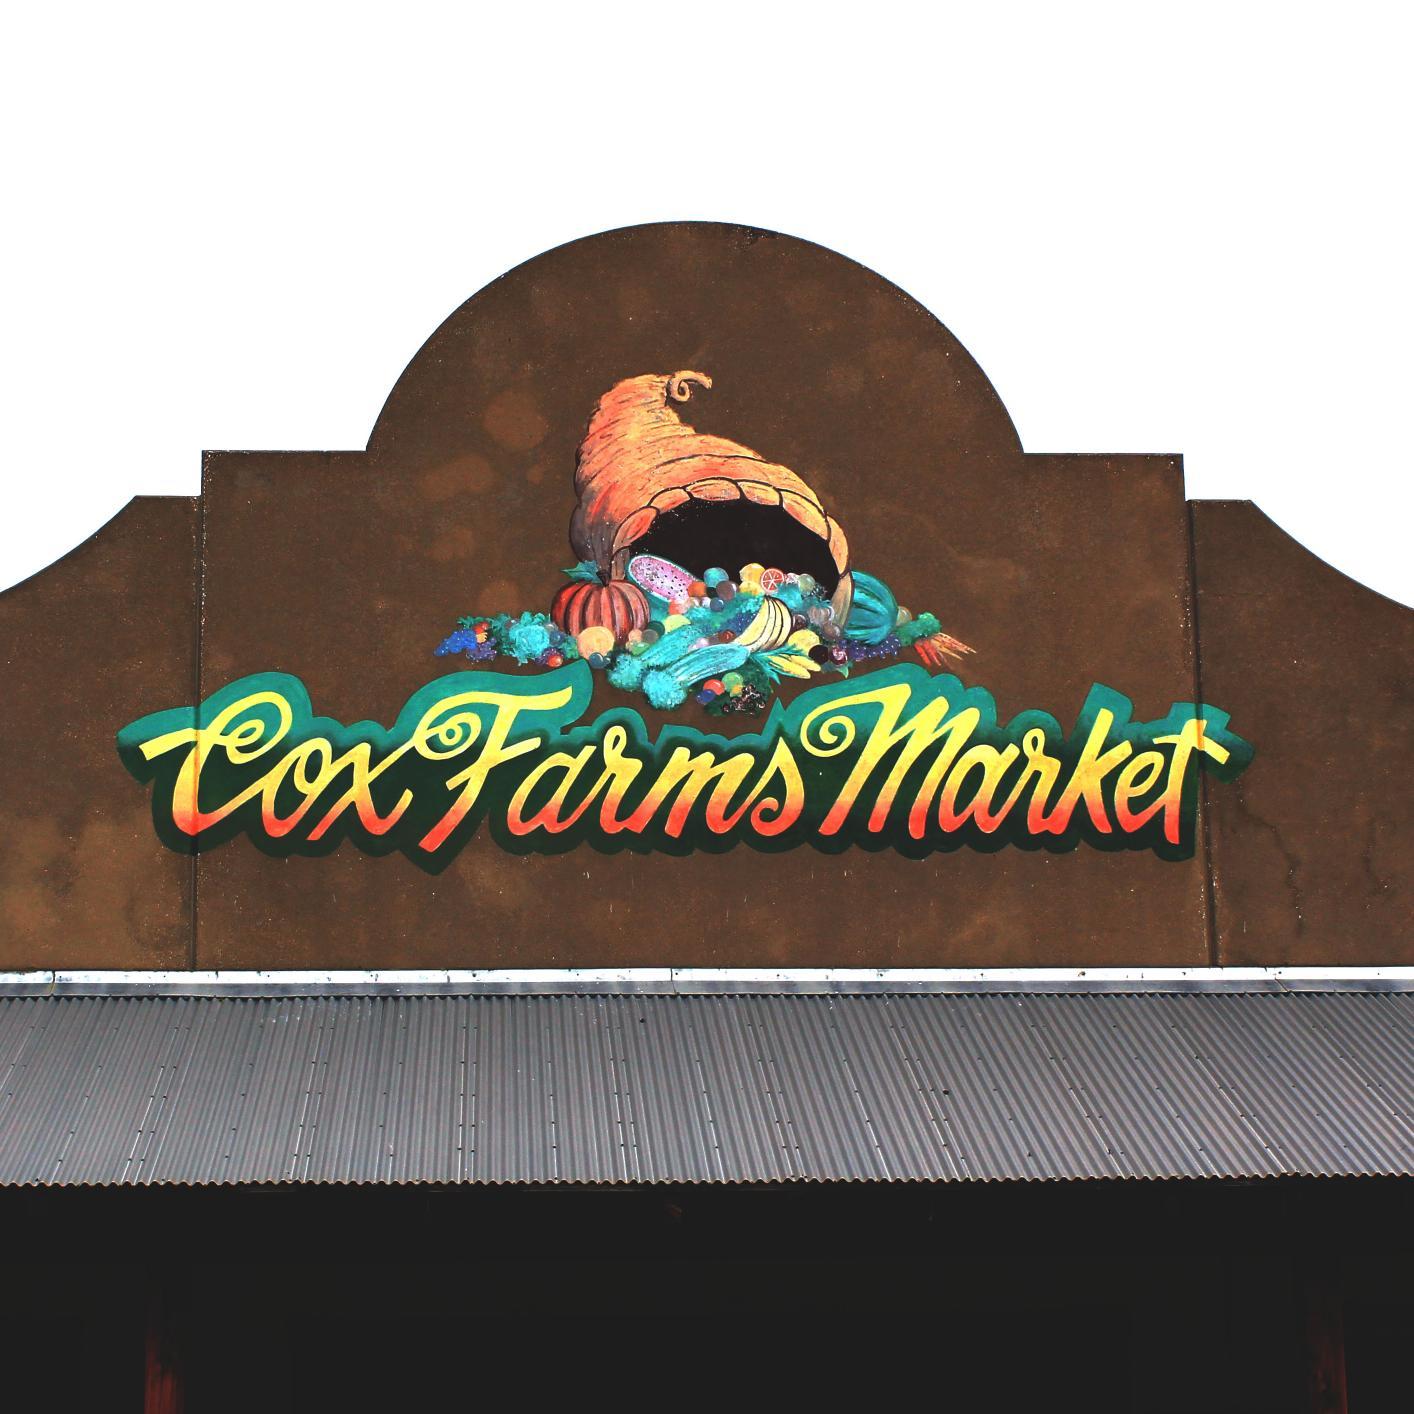 Cox Farms Market